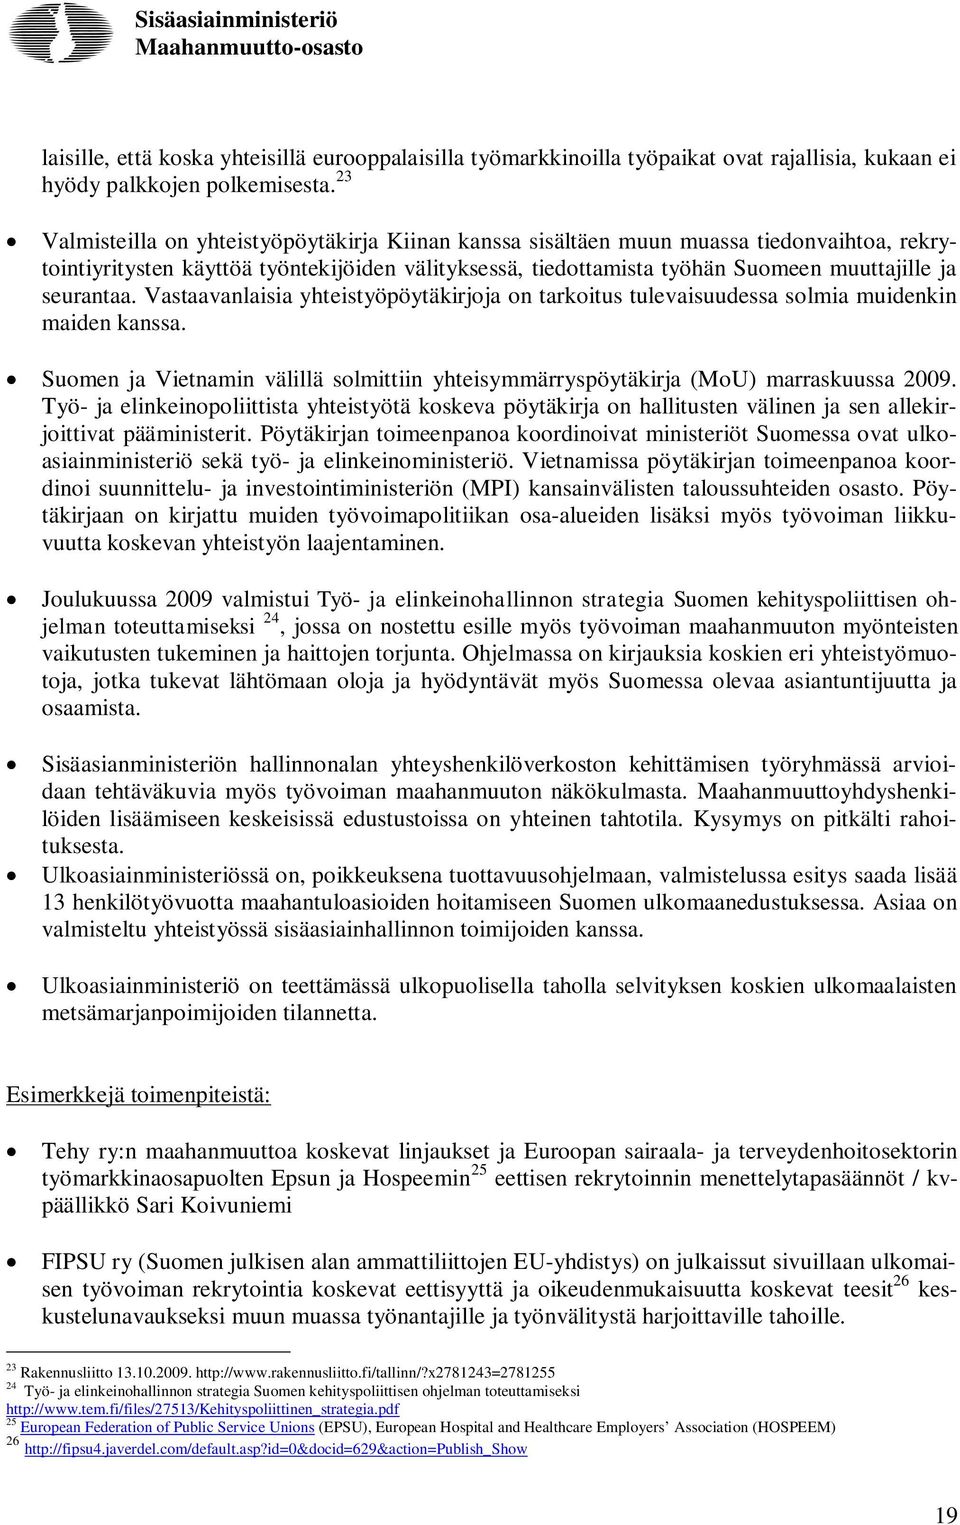 seurantaa. Vastaavanlaisia yhteistyöpöytäkirjoja on tarkoitus tulevaisuudessa solmia muidenkin maiden kanssa. Suomen ja Vietnamin välillä solmittiin yhteisymmärryspöytäkirja (MoU) marraskuussa 2009.